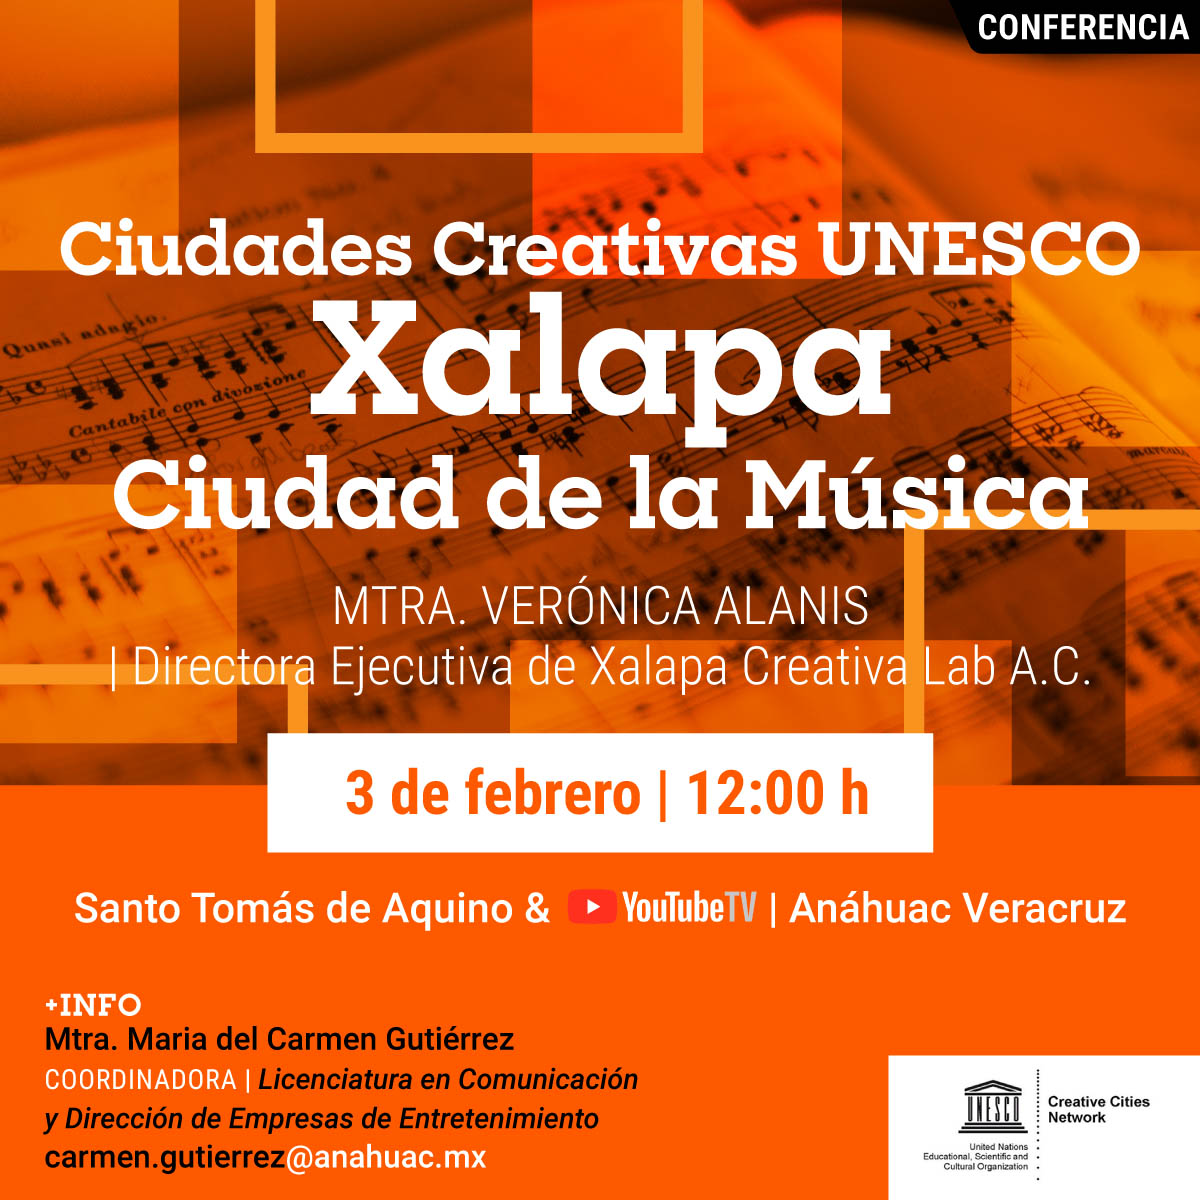 Ciudades Creativas UNESCO: Xalapa Ciudad de la Música